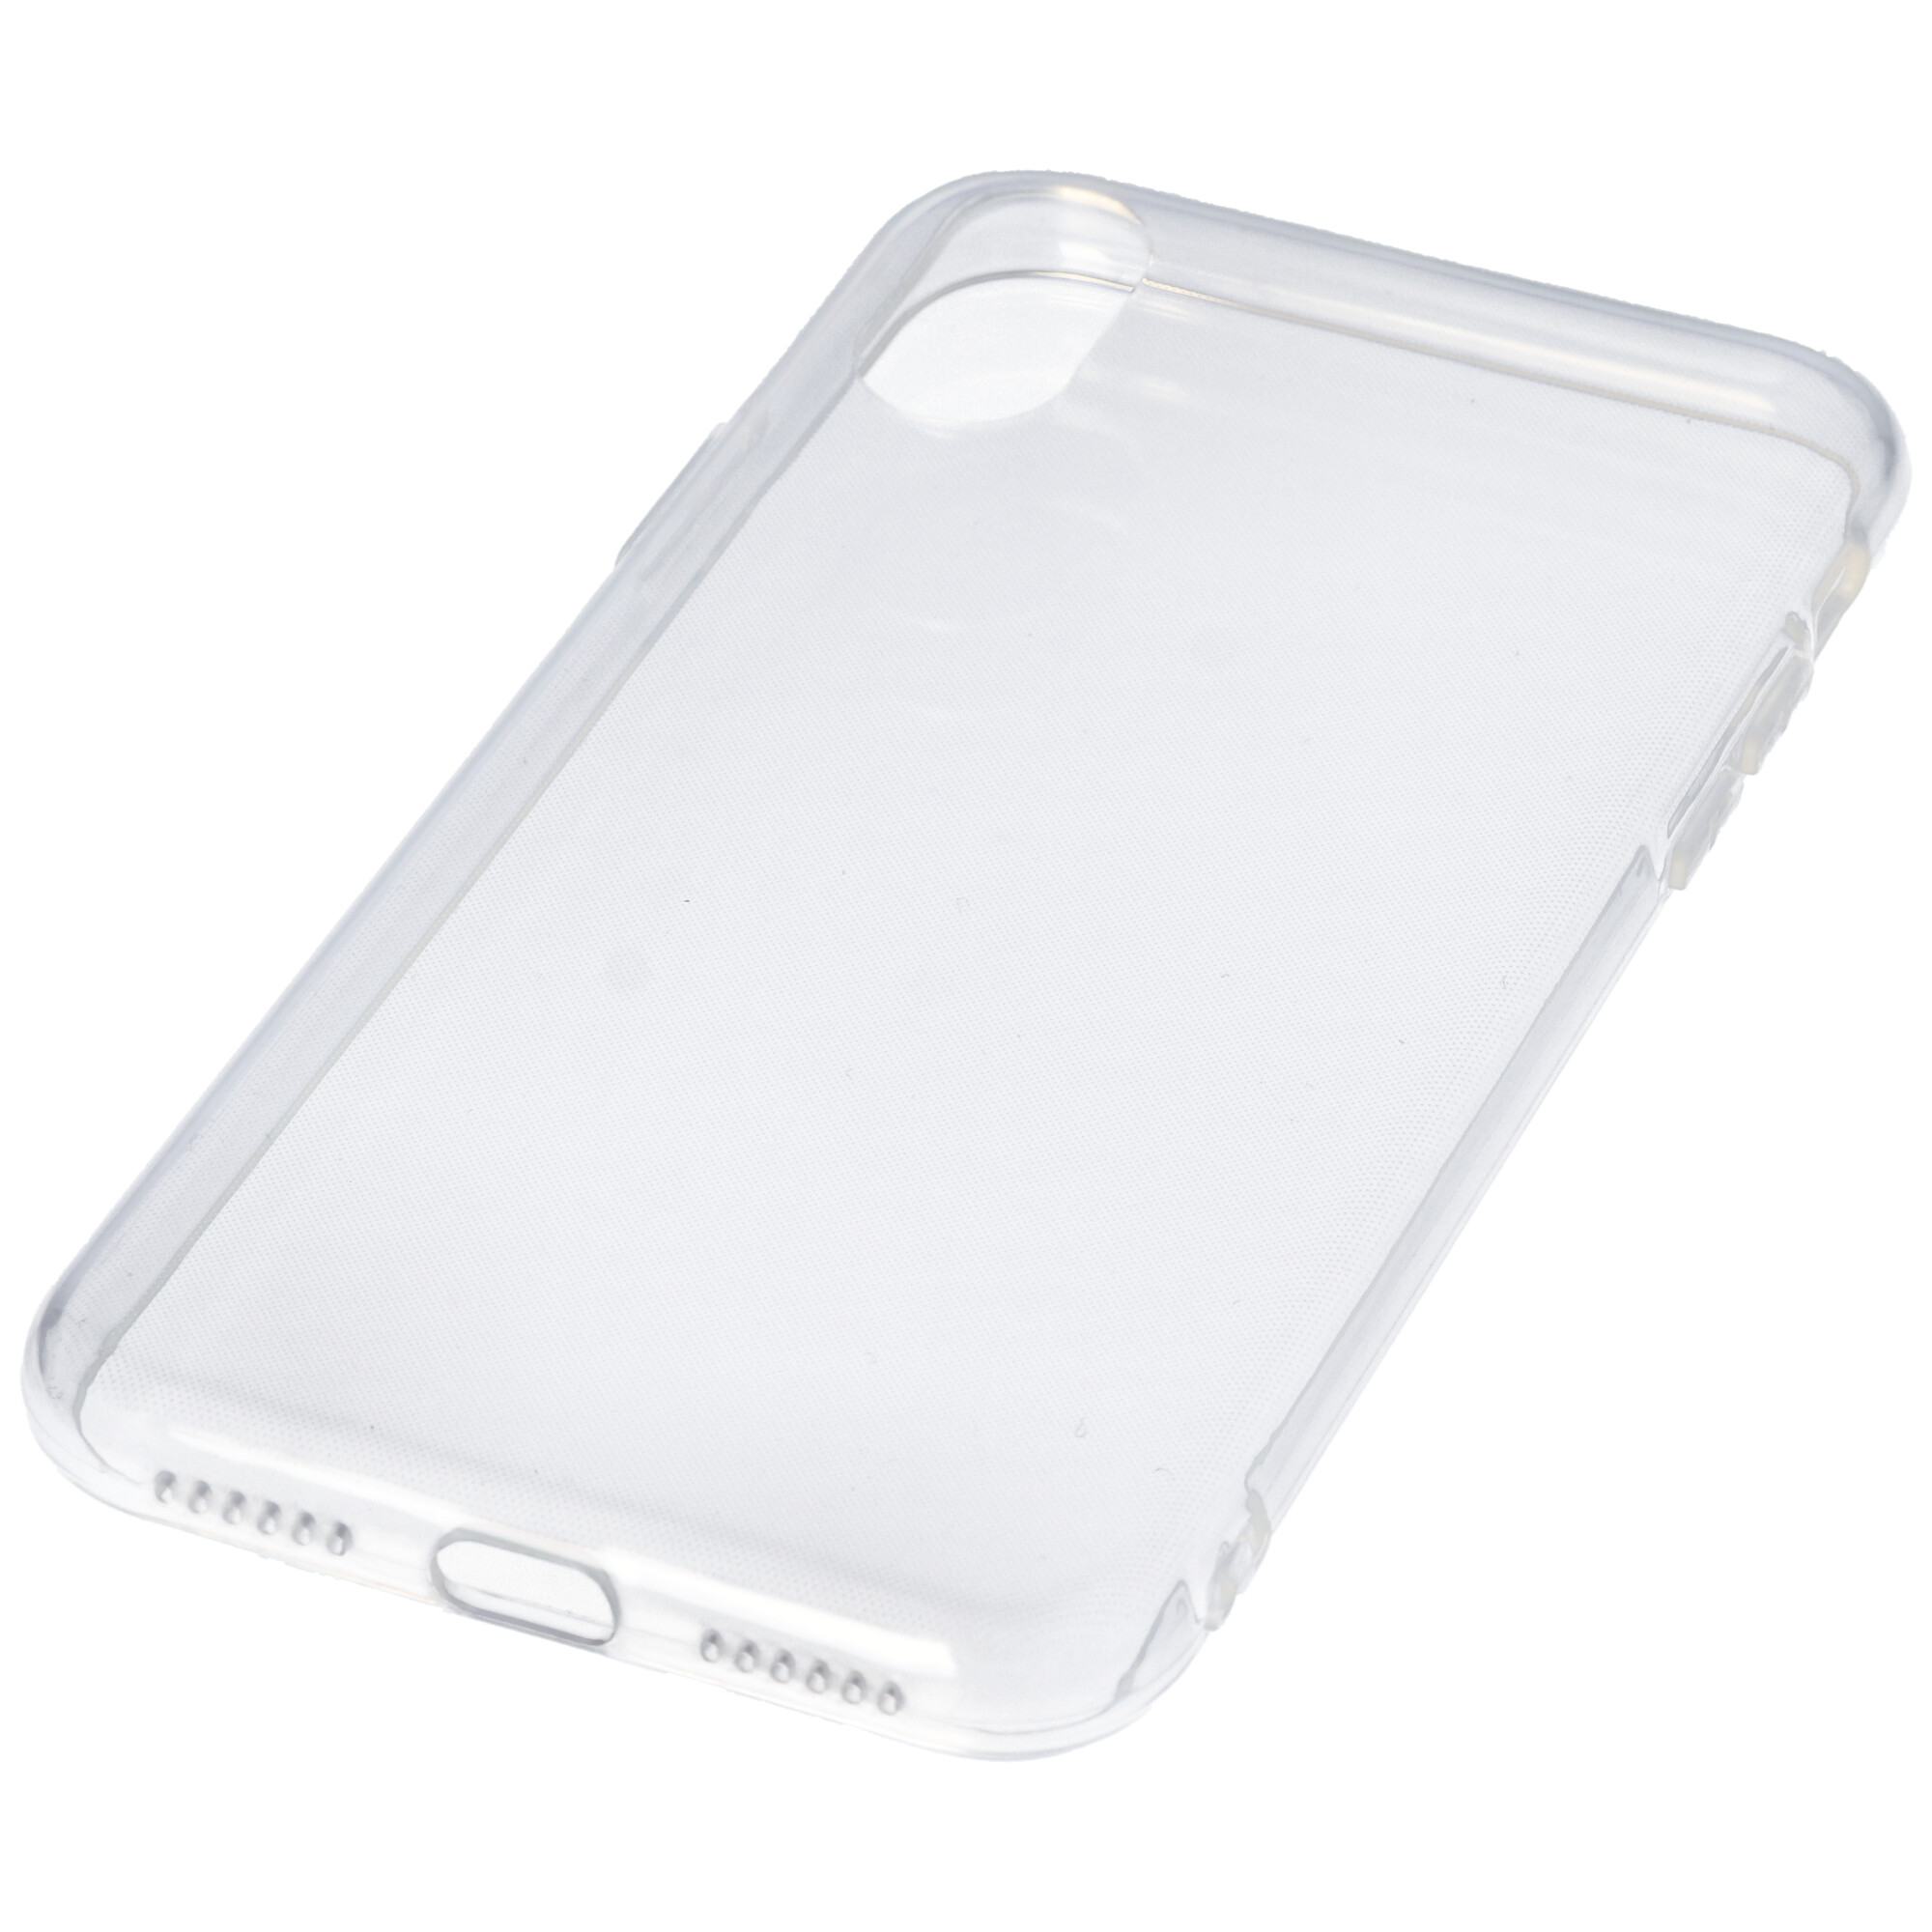 Hülle passend für Samsung Galaxy S21 / S30 - transparente Schutzhülle, Anti-Gelb Luftkissen Fallschutz Silikon Handyhülle robustes TPU Case